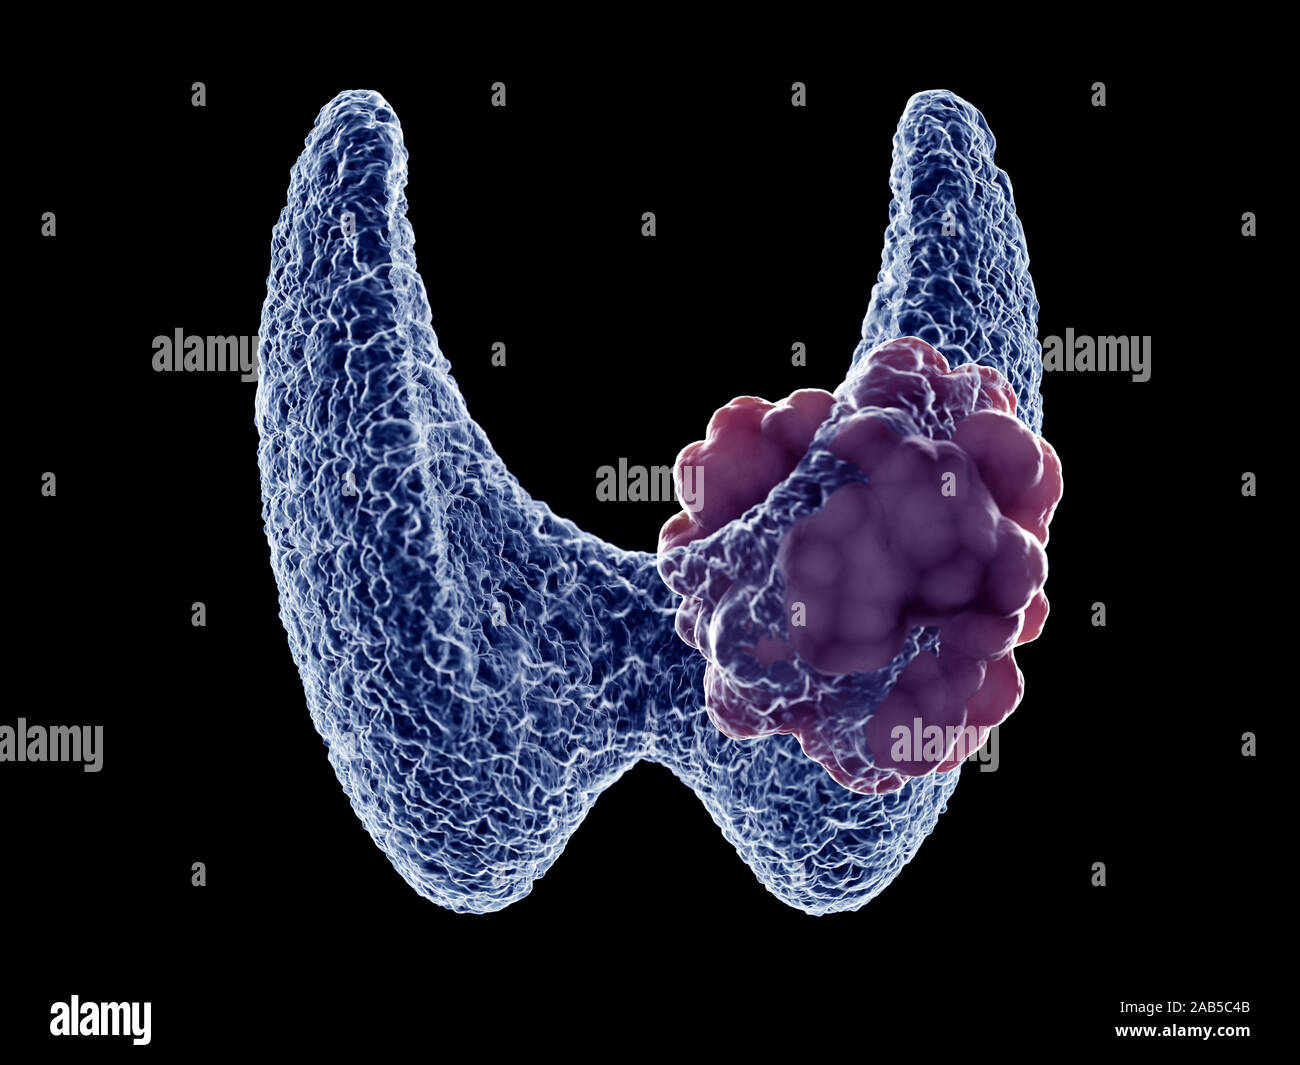 Rendu 3D précis médicalement illustration d'une tumeur de la thyroïde Banque D'Images